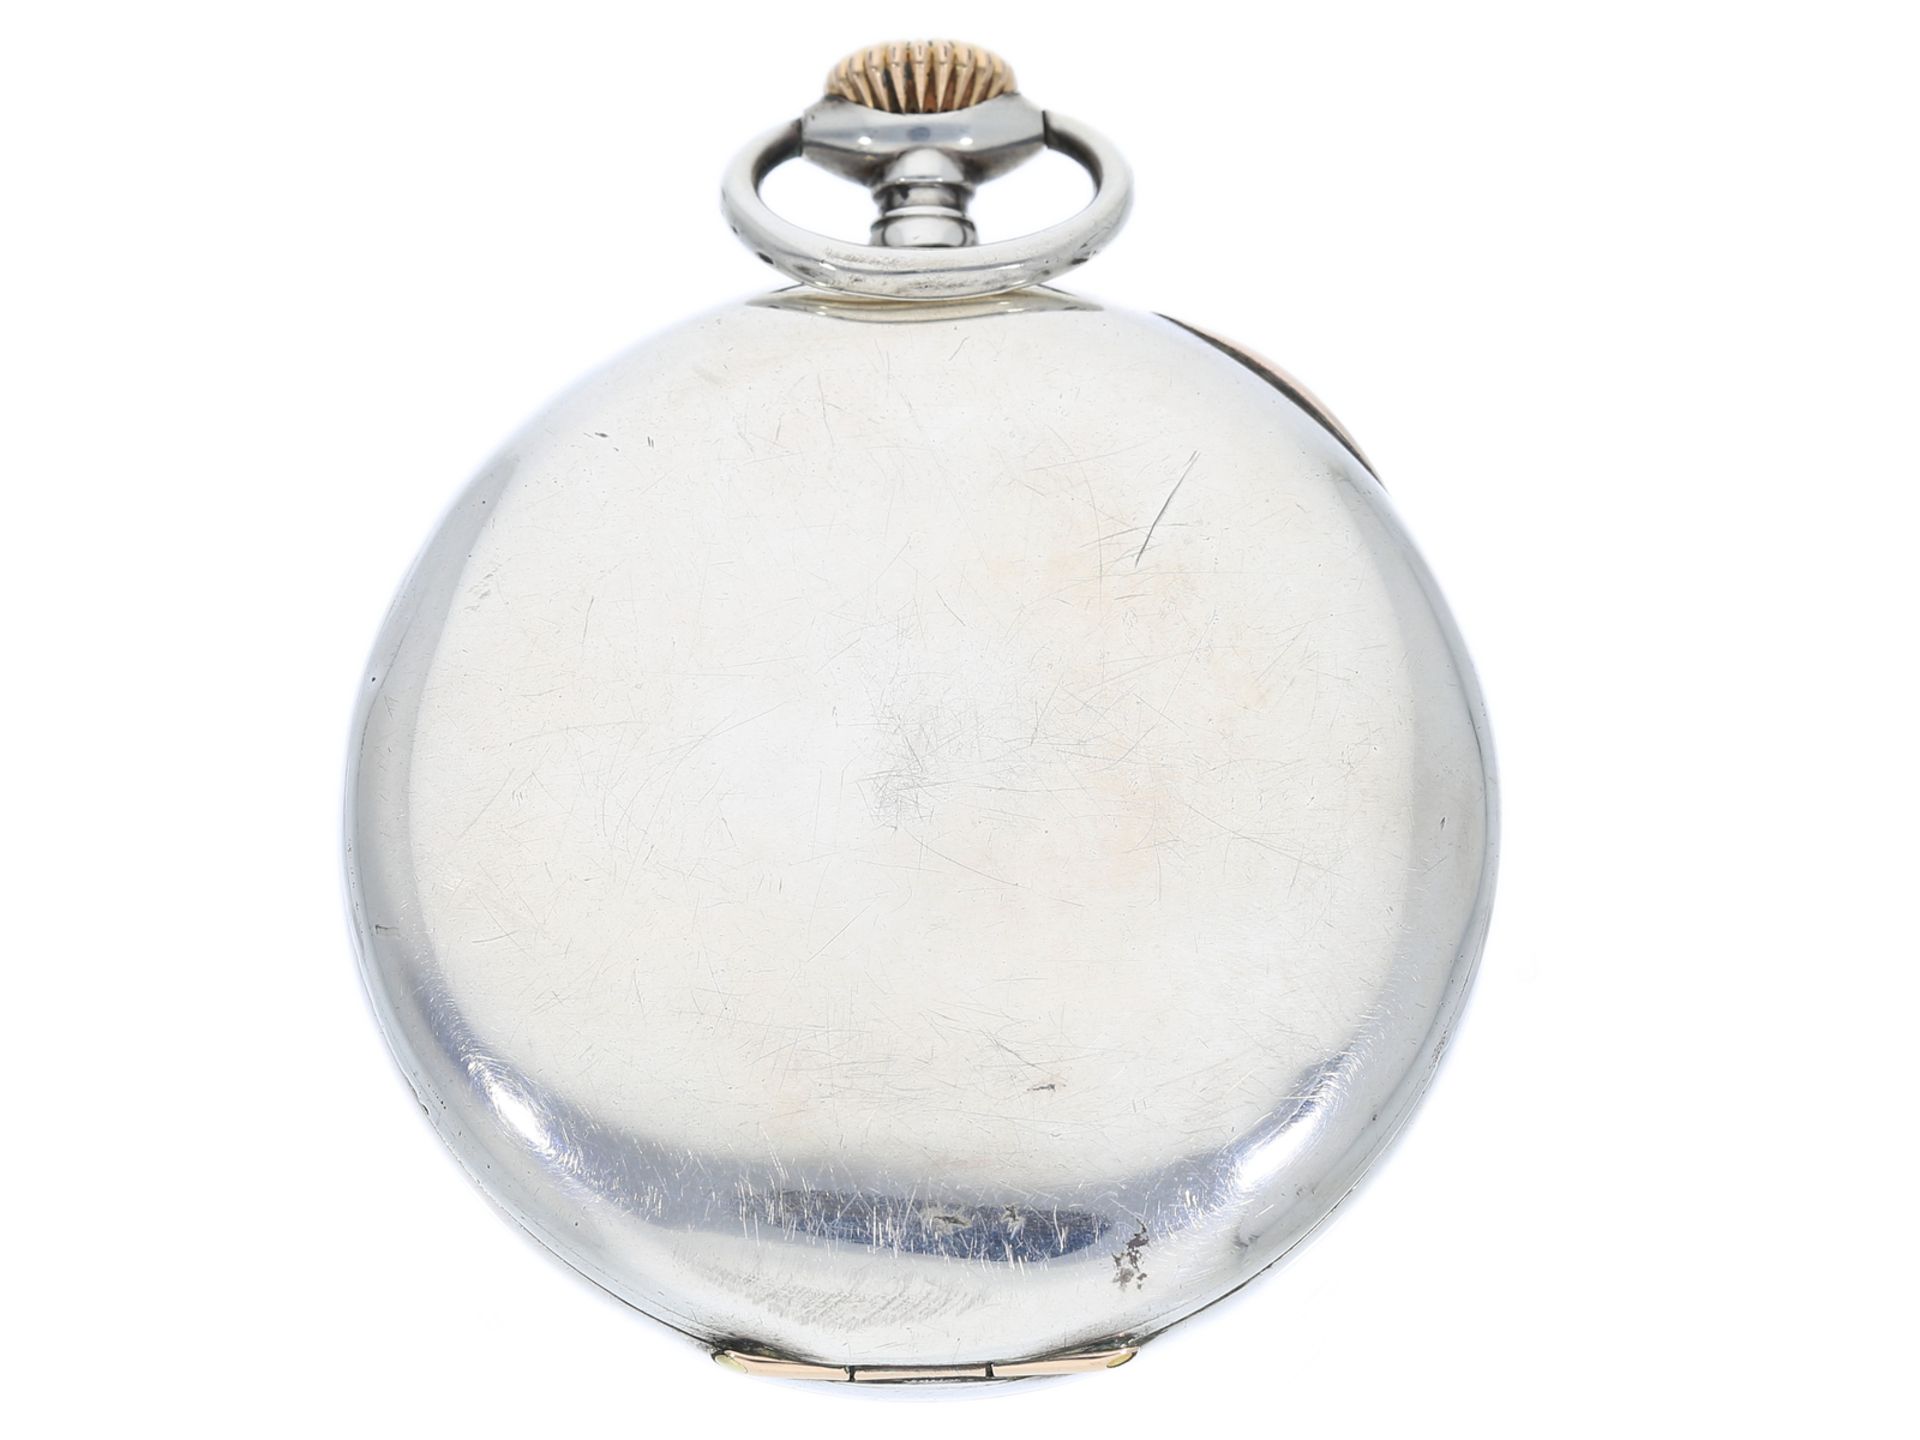 Taschenuhr: ungewöhnliche, große Taschenuhr mit Patek Philippe Ankerchronometerwerk, ca. 1895 - Bild 2 aus 4